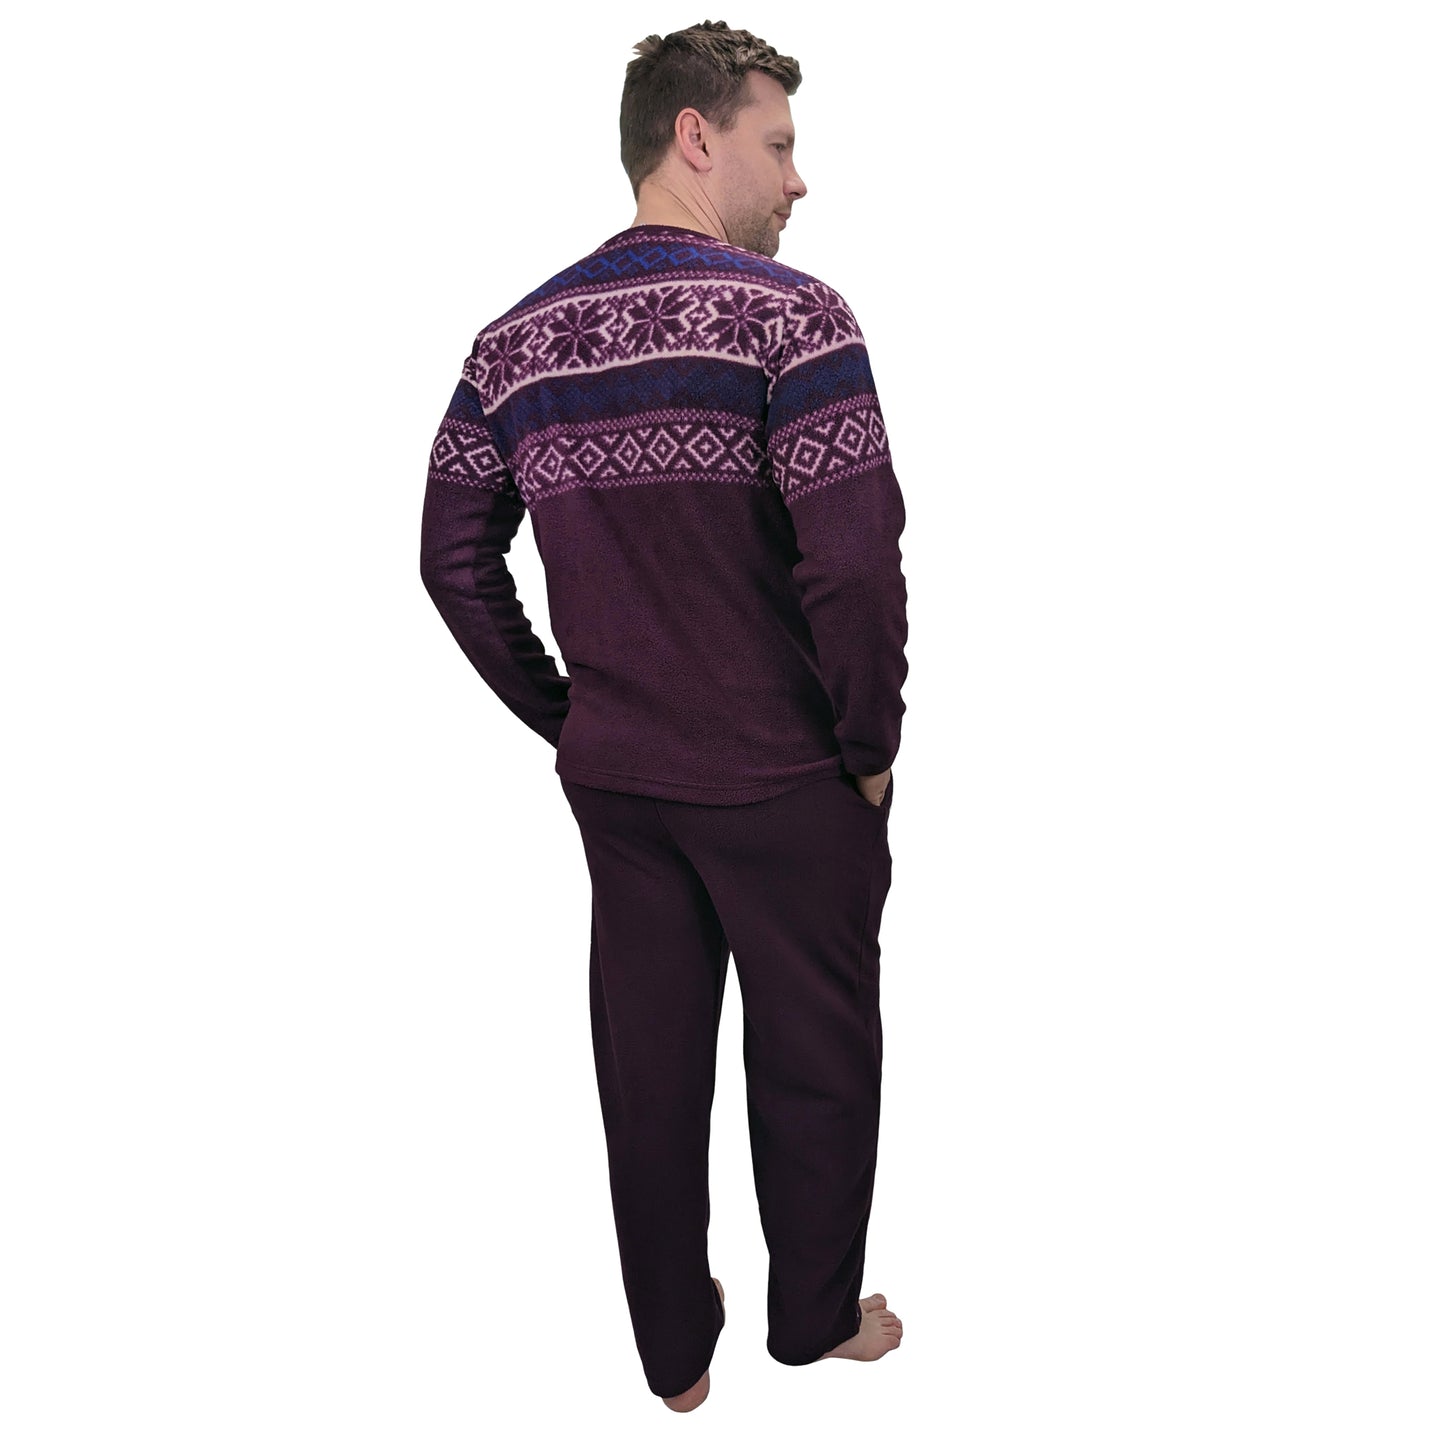 Bylur Fleece PJ/Loungewear Set Sleepwear & Loungewear ASASonline